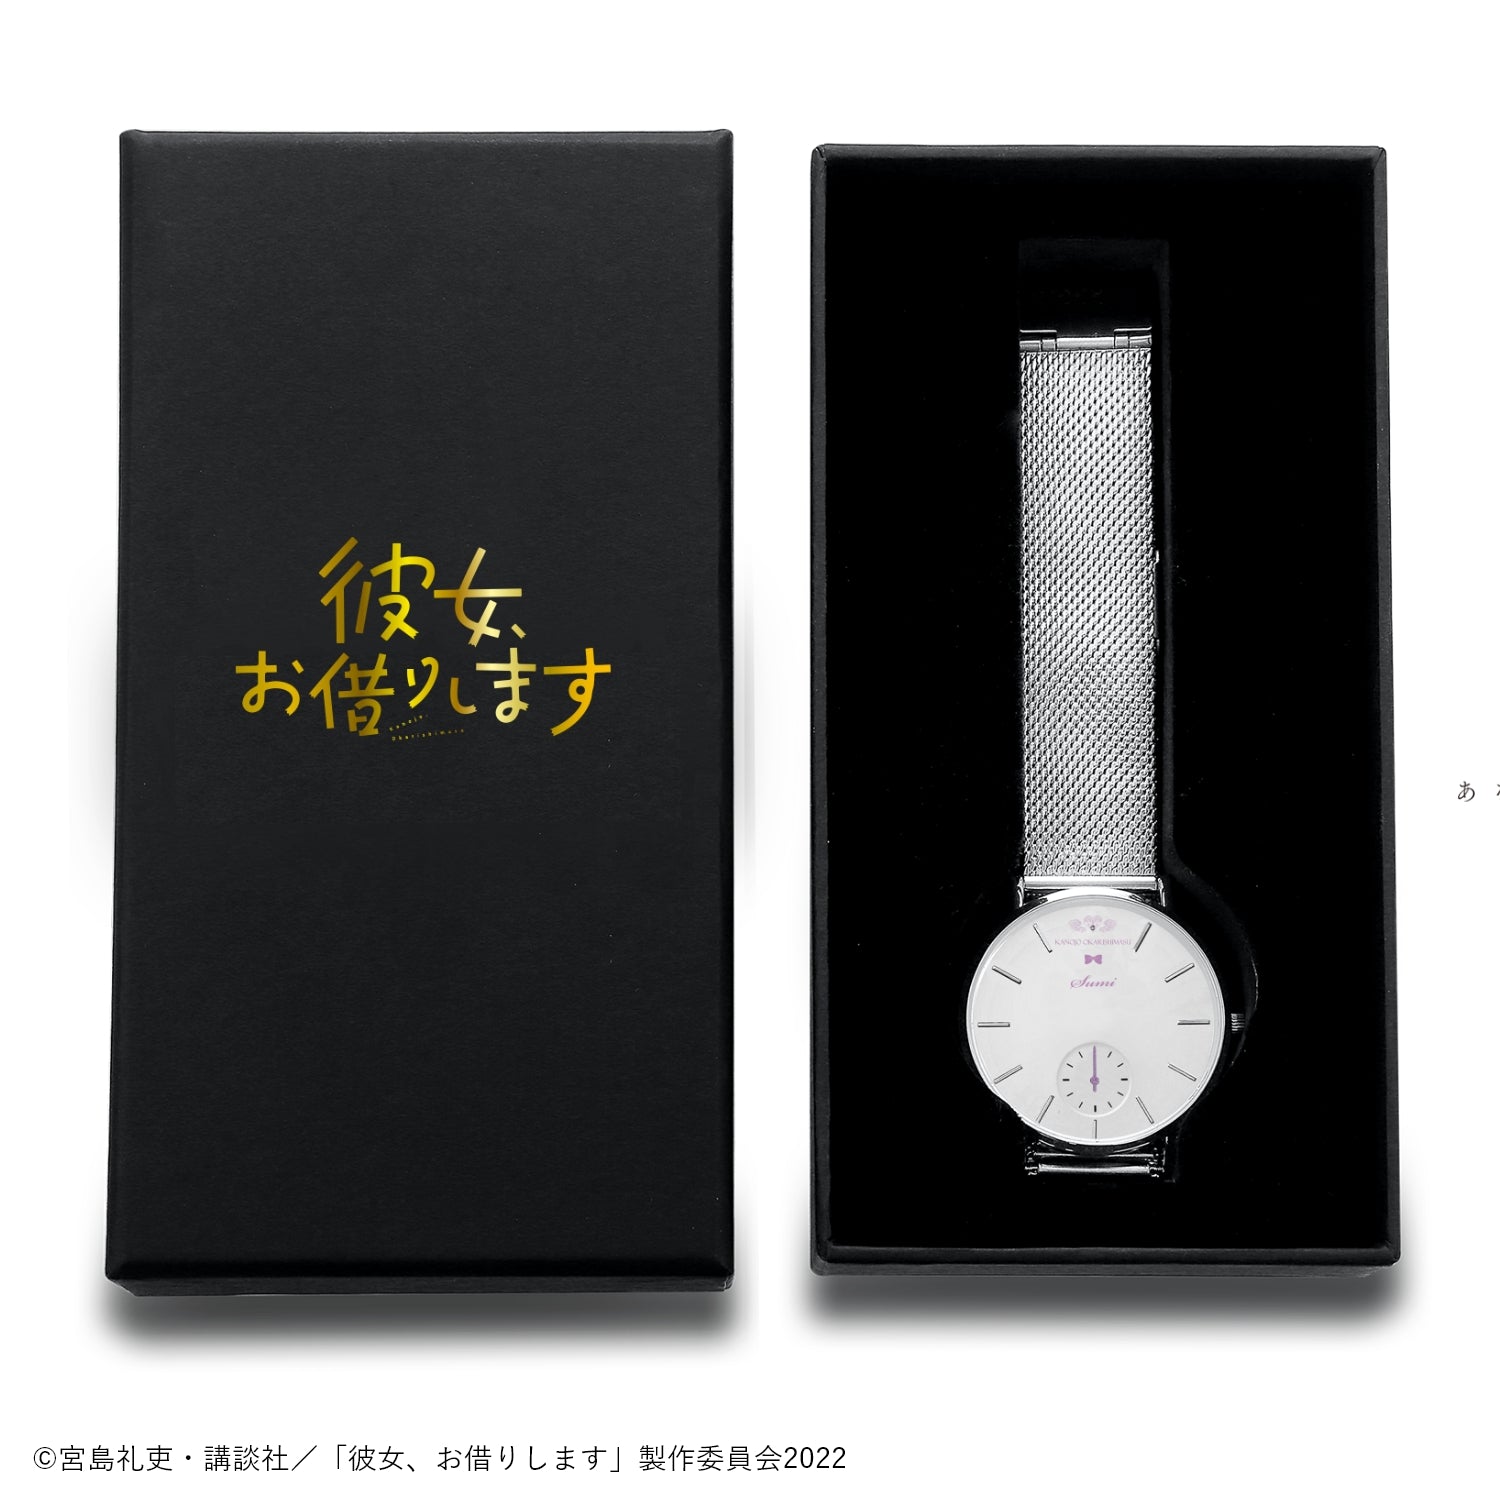 アニメ「彼女、お借りします」薄型スモールセコンド腕時計 | 七海麻美 - 公式通販サイト「アニメコレクション/Anime Collection」